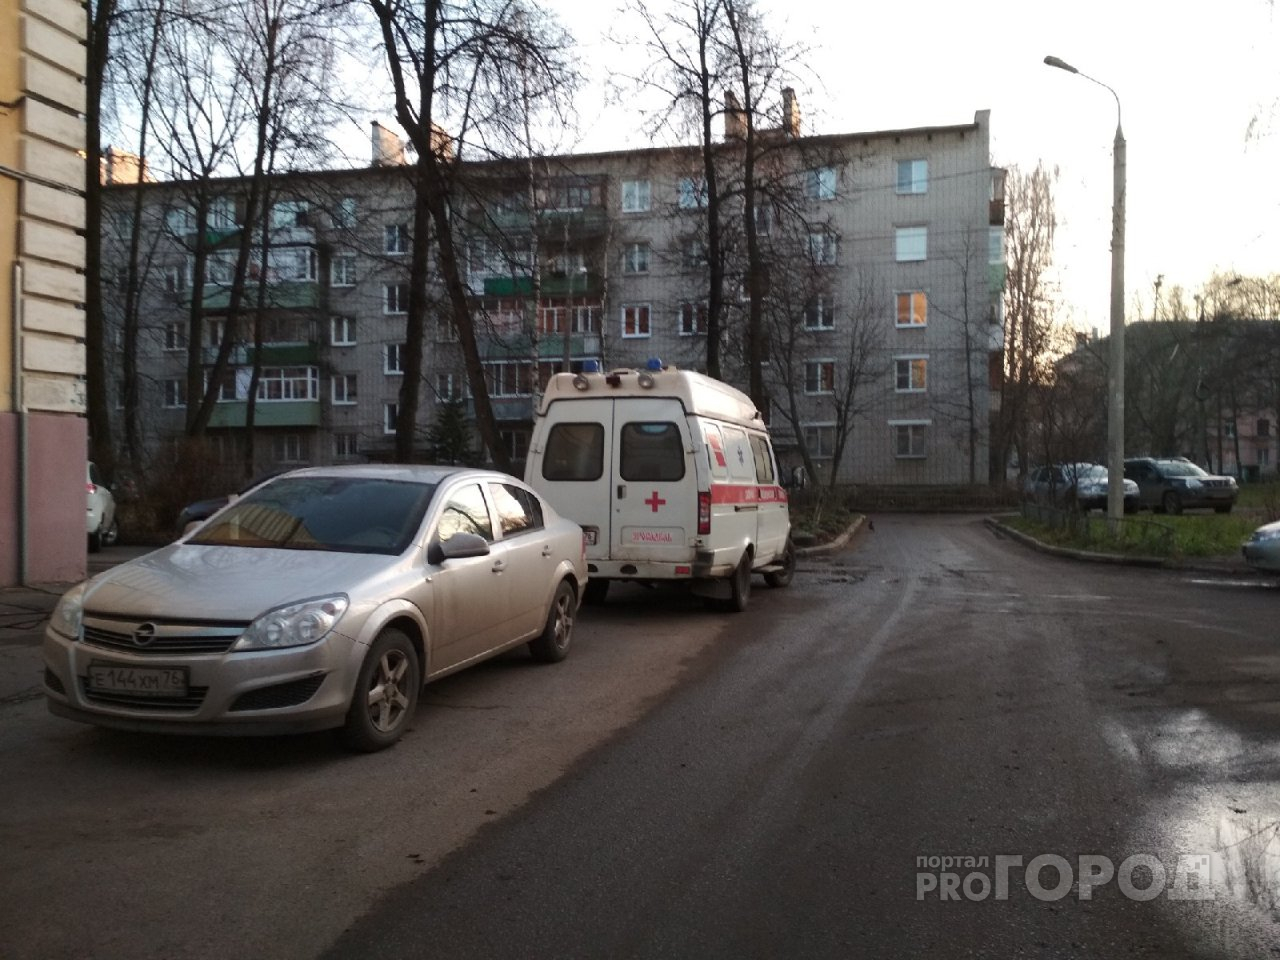 "Сгорела мгновенно": от пневмонии в Ярославле умерла 34-летняя женщина